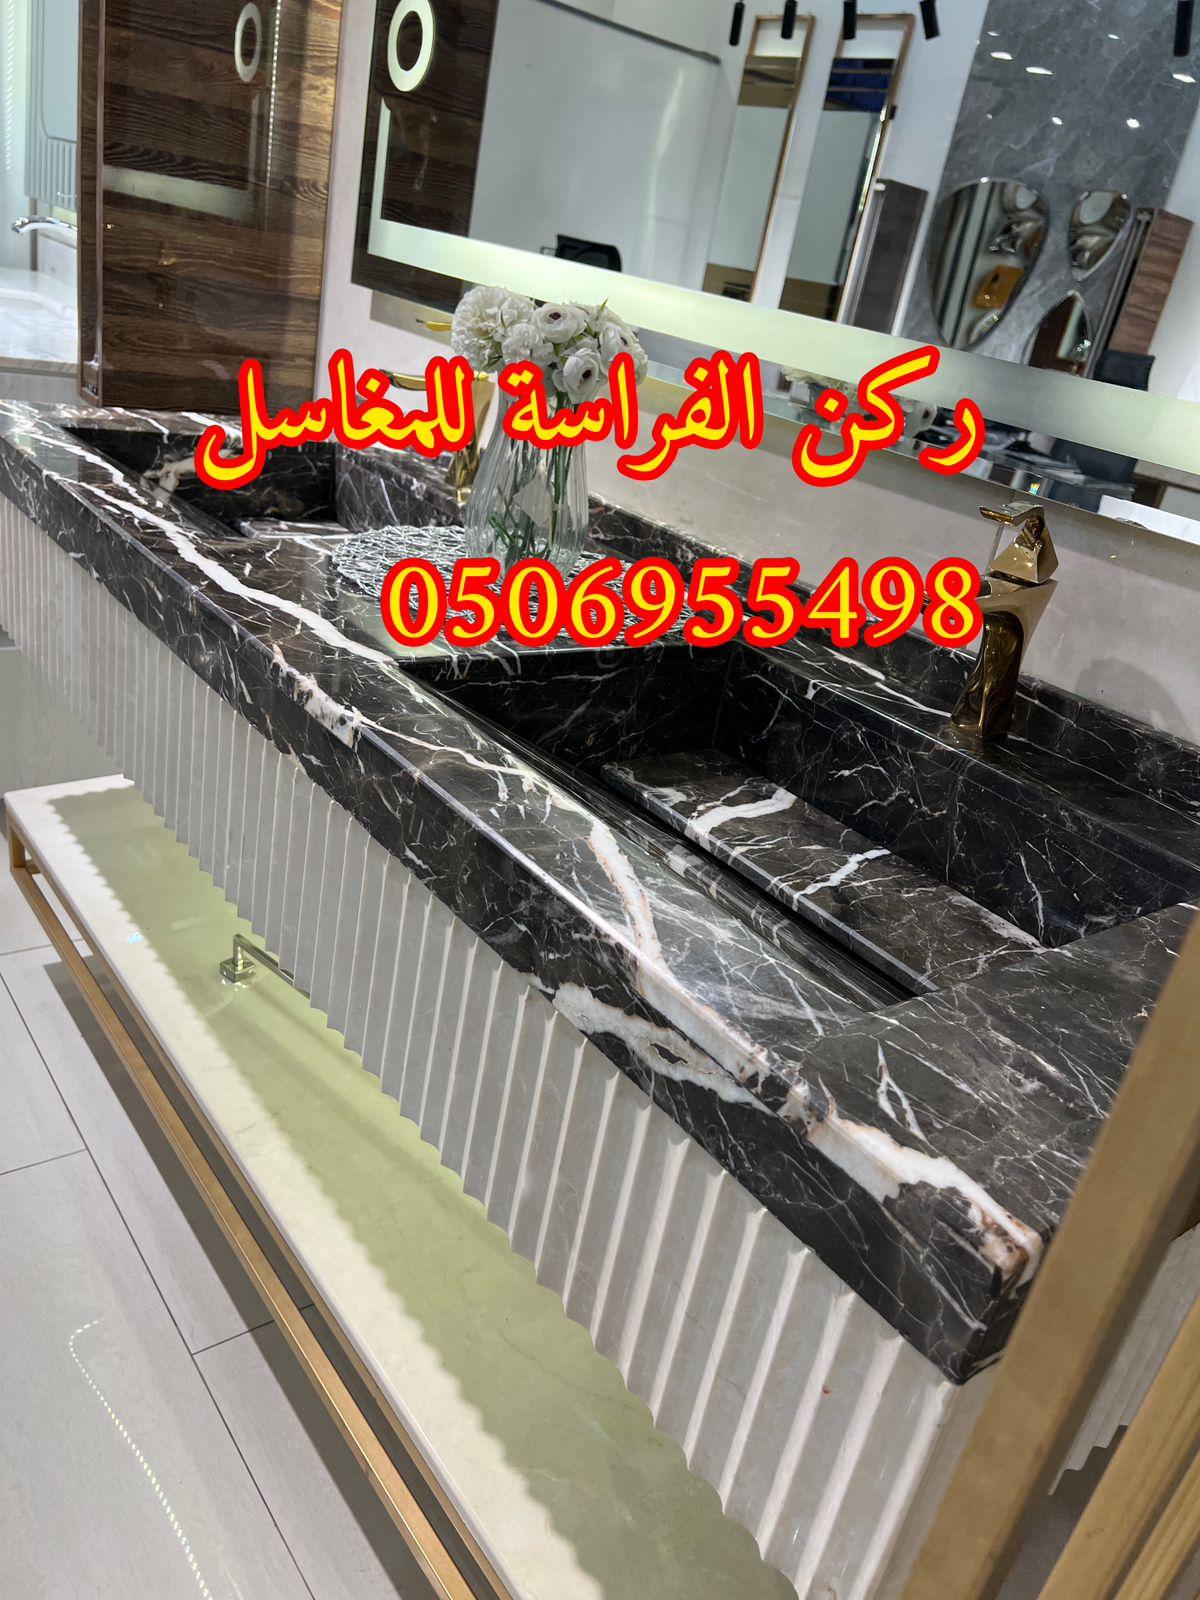 الرياض - ديكورات مغاسل حمامات رخام في الرياض,0506955498 661701804